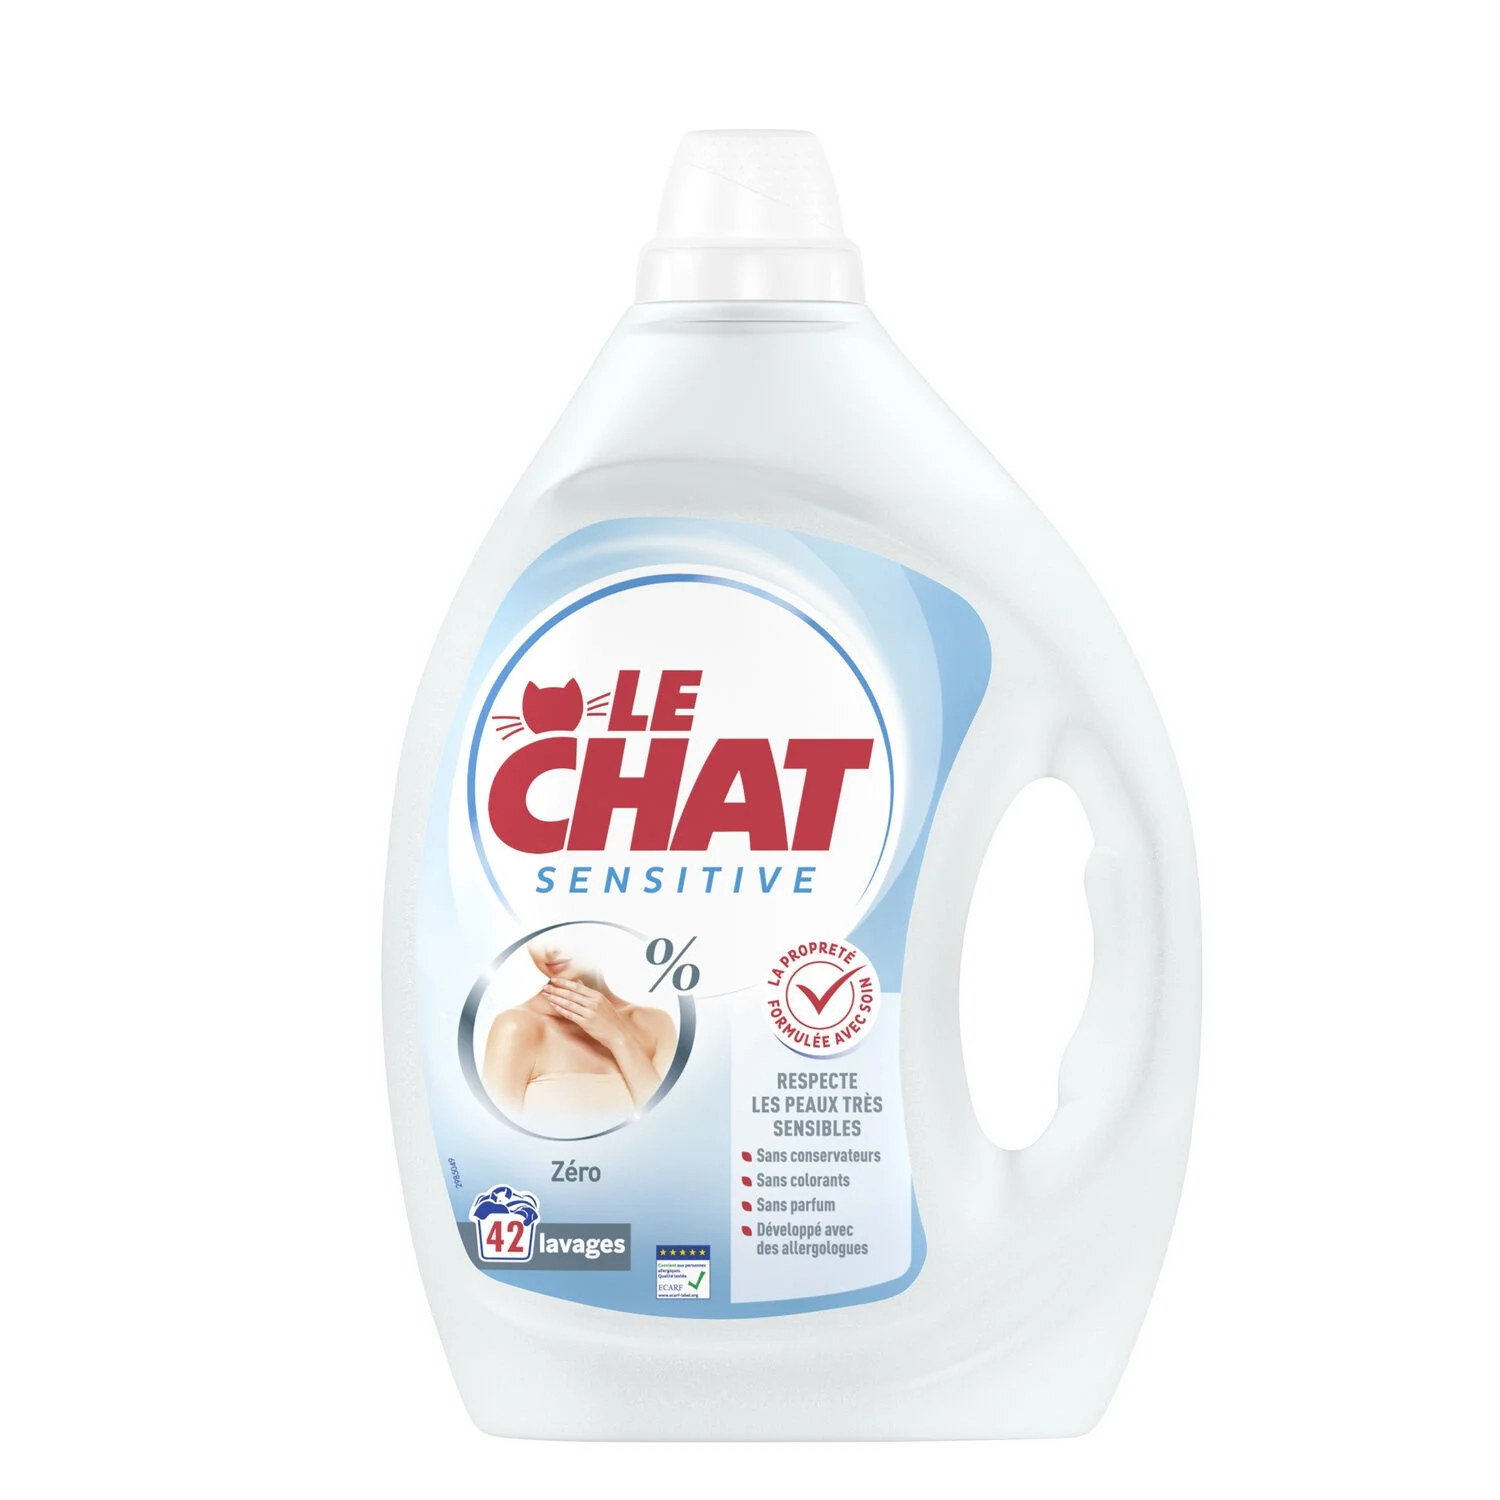 Sensitive Liquid Detergent 0% X42 Washes - Le Chat